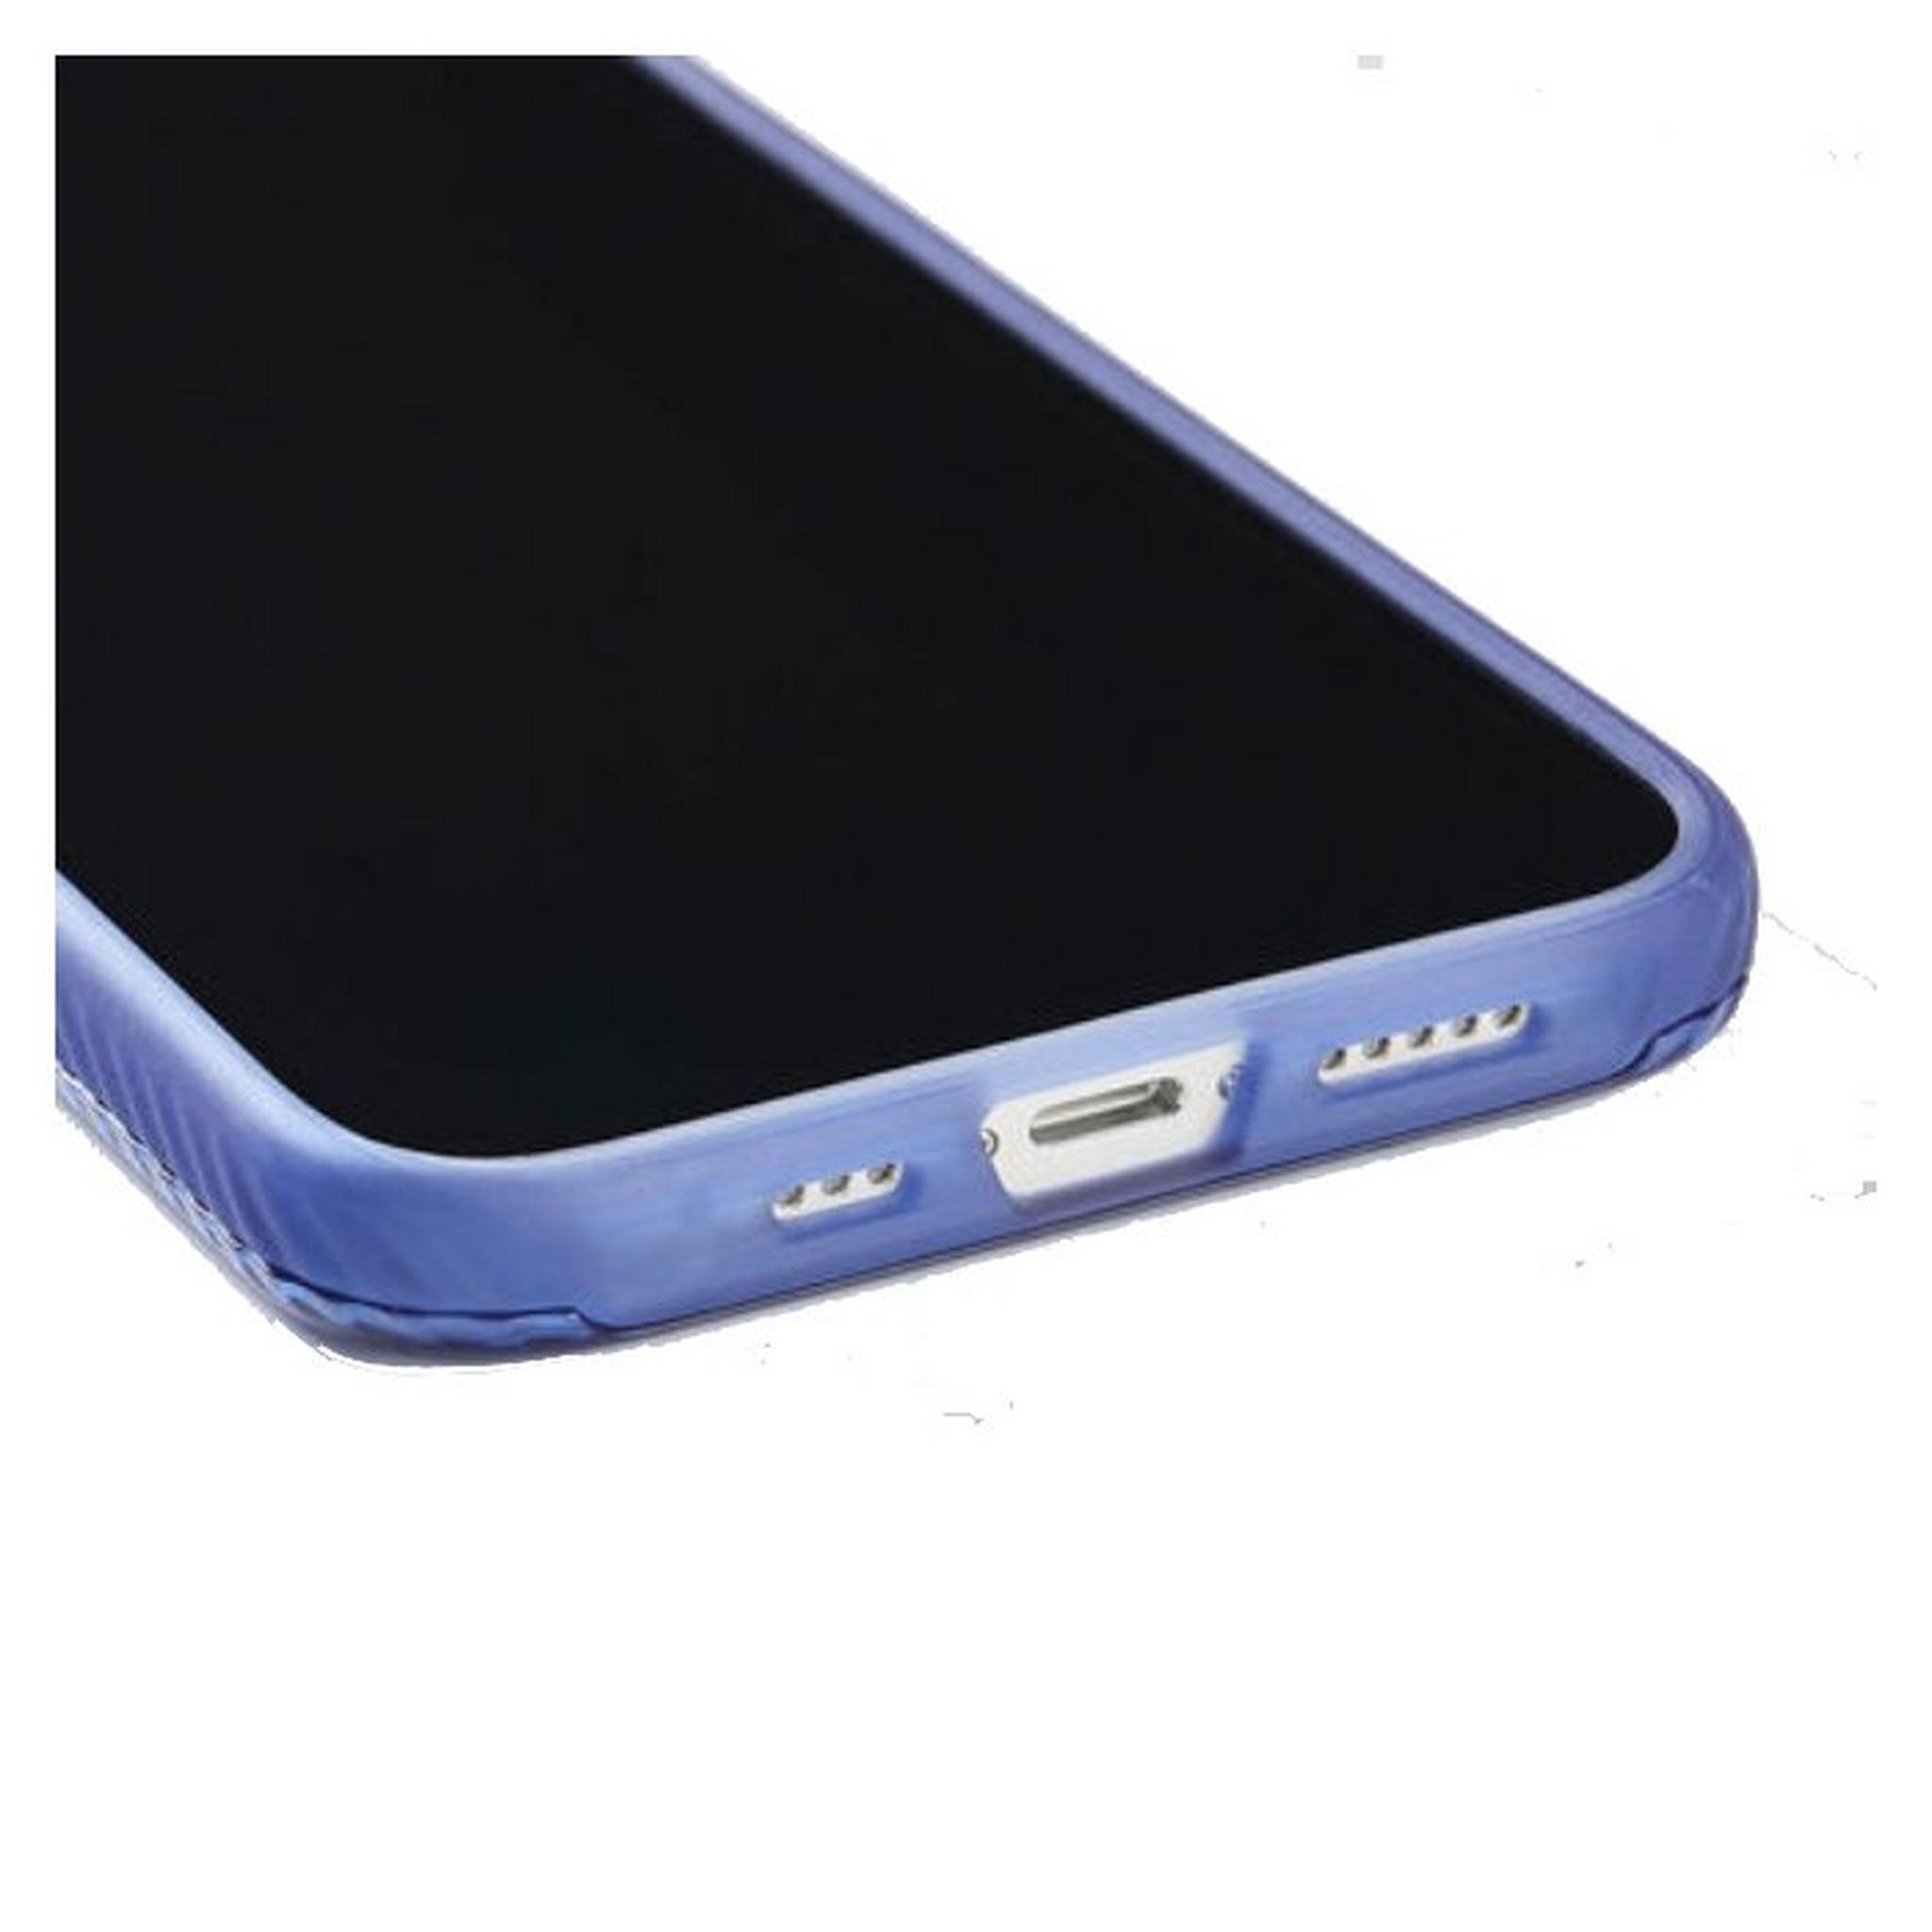 Bodyguardz iPhone 13 Carve Case - Blue